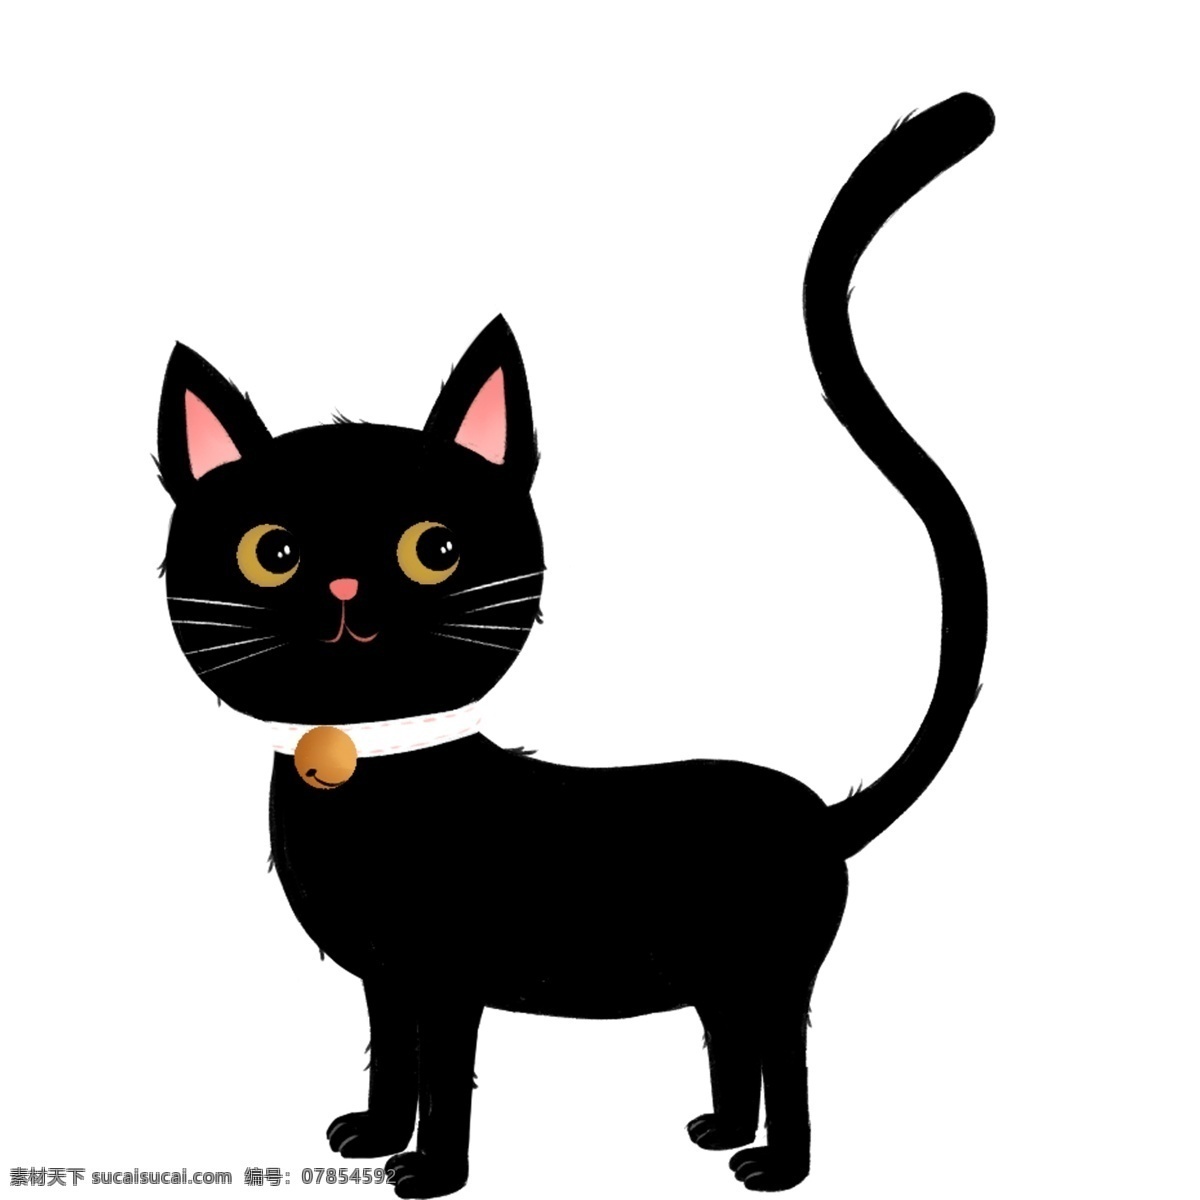 卡通 黑猫 图案 元素 小猫 动物 设计元素 简约 手绘 手绘图案 创意元素 手绘元素 psd元素 免扣元素